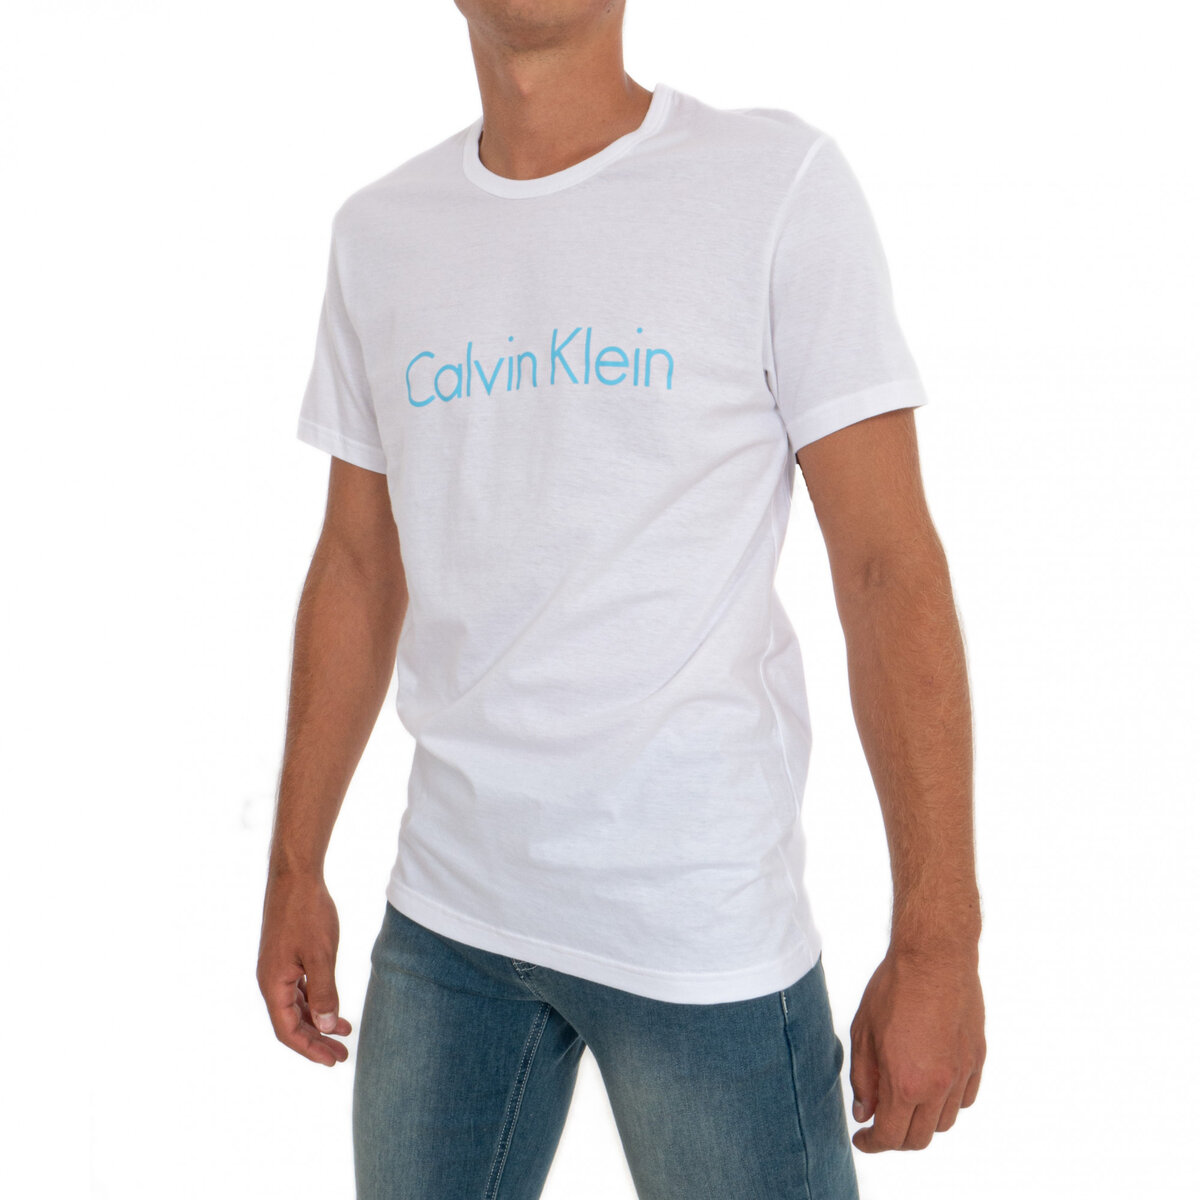 Pánské tričko SHWZ7O bílá - Calvin Klein, bílá M i10_P38539_1:5_2:91_